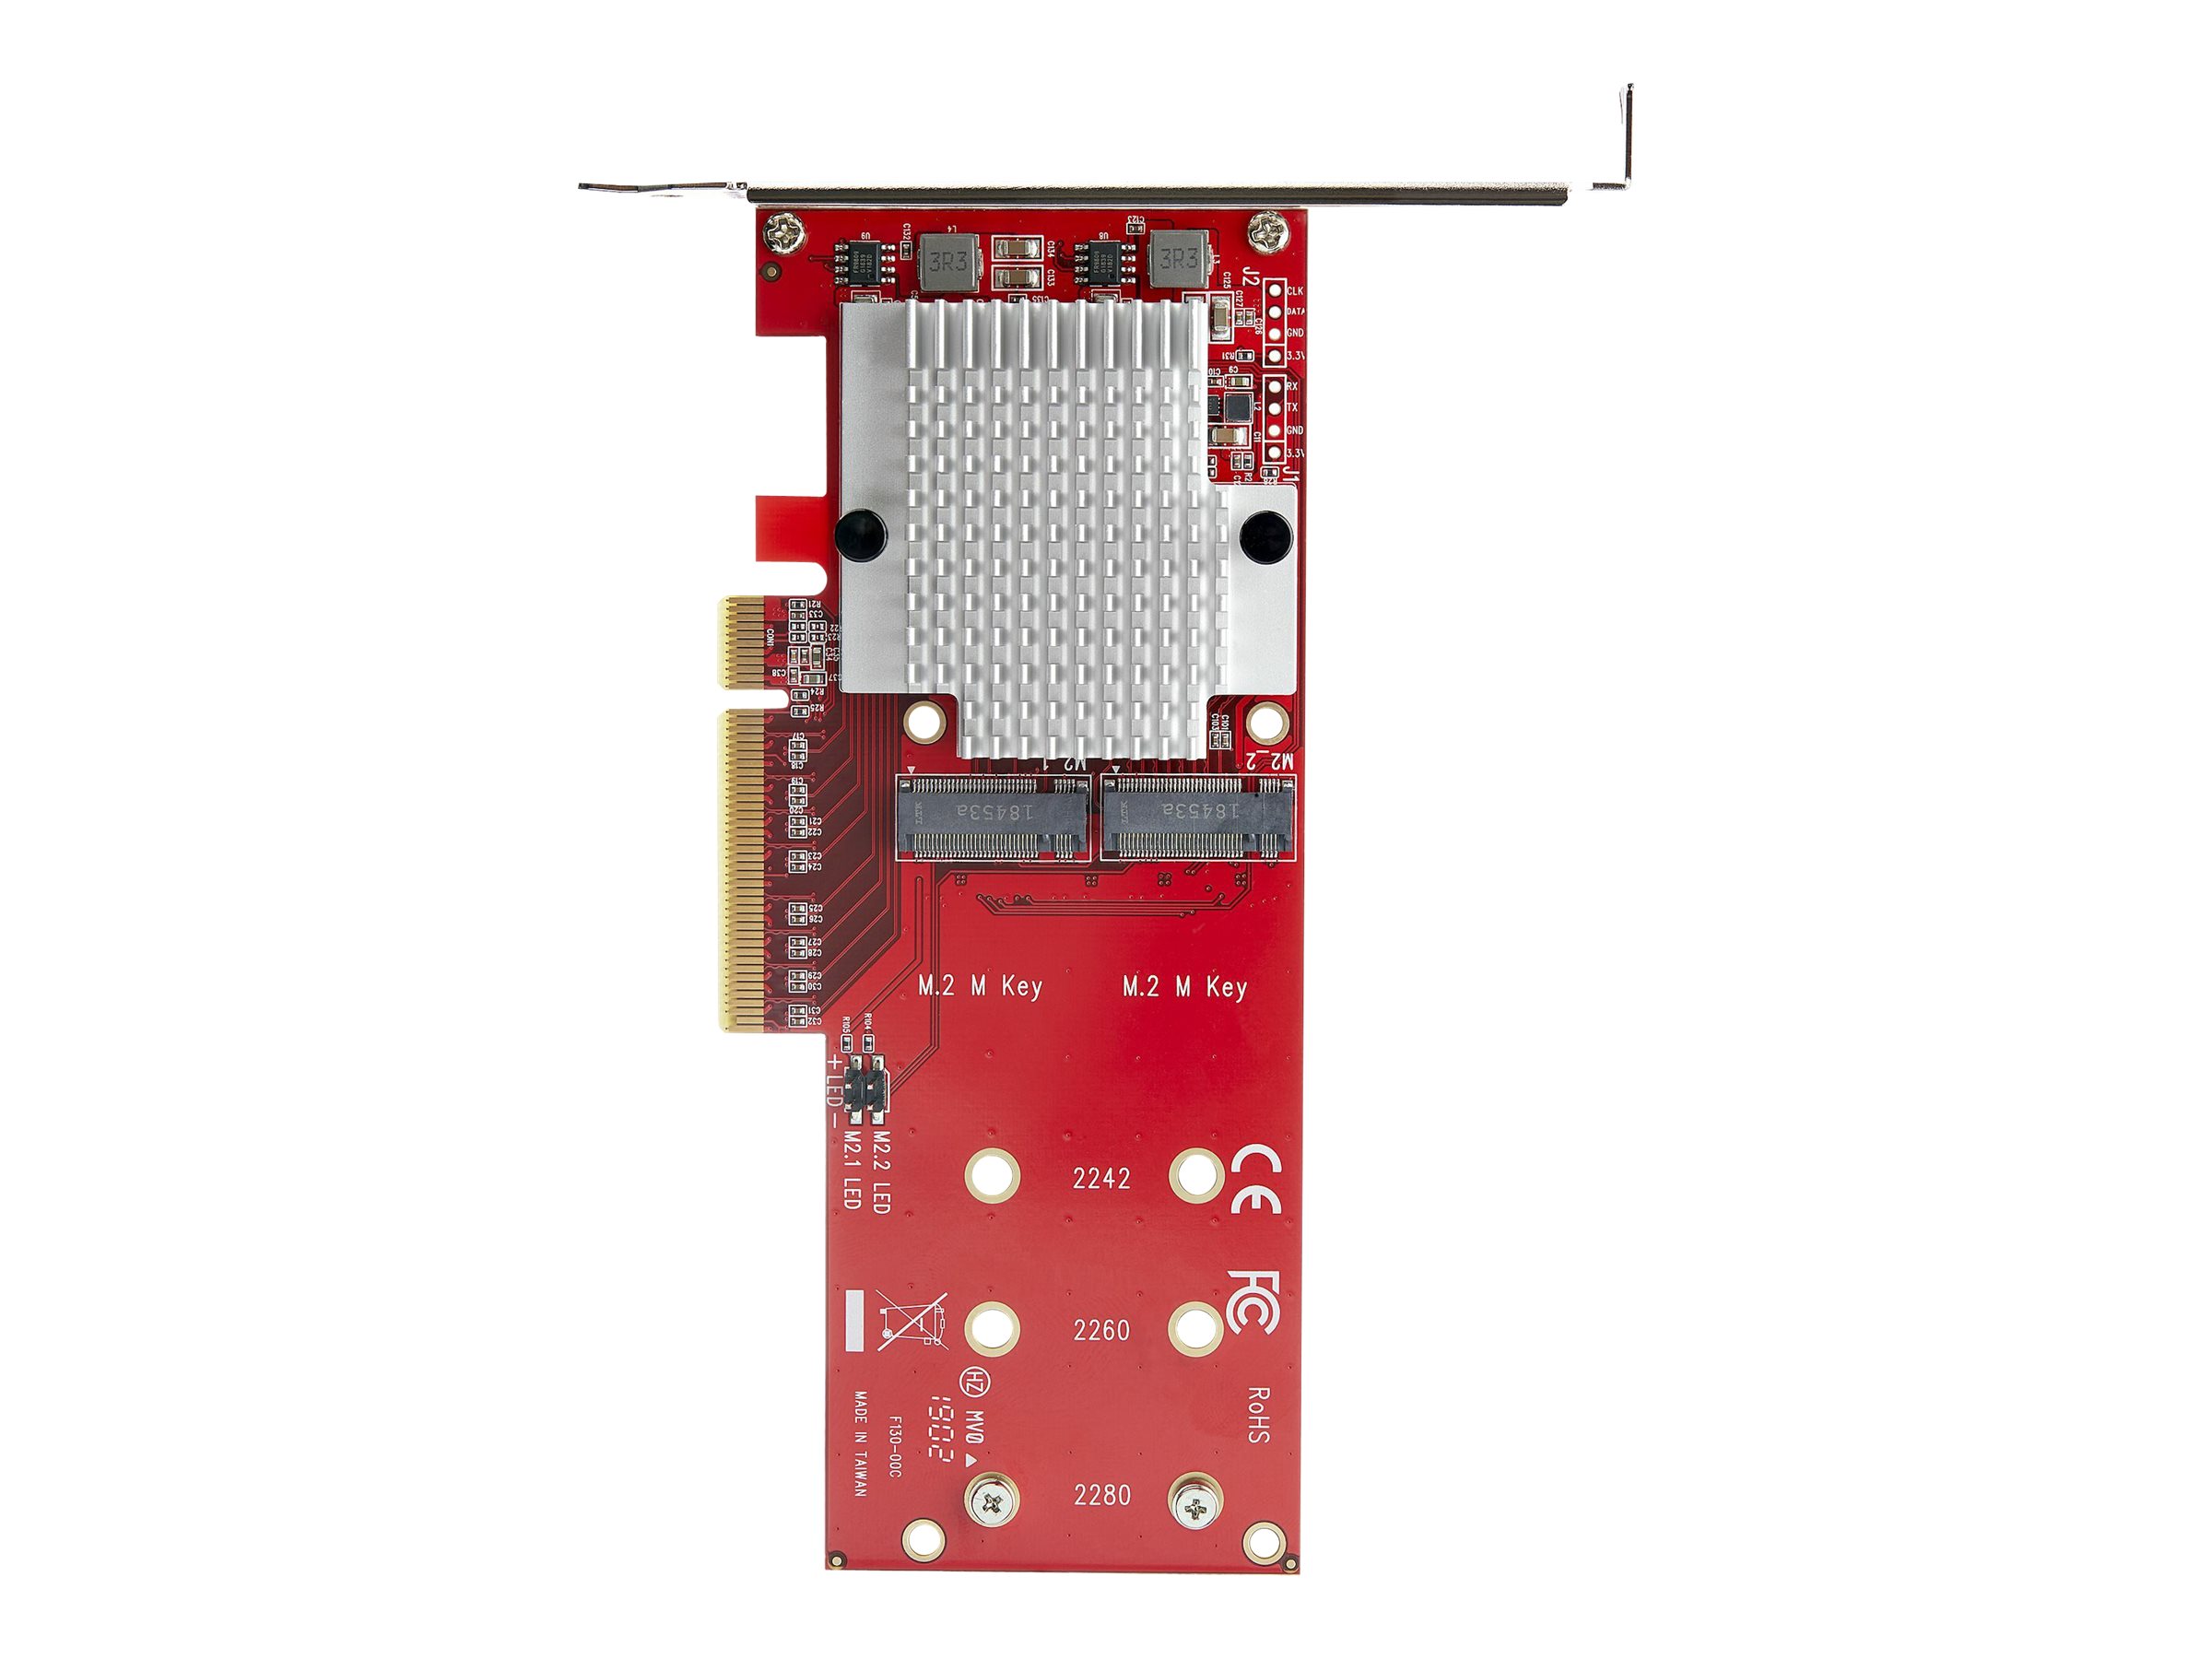 StarTech.com Dual M.2 PCIe SSD Adapter Karte - x8 / x16 Dual NVMe oder AHCI M.2 SSD zu PCI Express 3.0 - M.2 NGFF PCIe (M-Key) kompatibel - Unterstützt 2242, 2260, 2280 - JBOD - Mac & PC (PEX8M2E2) - Schnittstellenadapter - M.2 Card - PCIe 3.0 x8 - TAA-ko